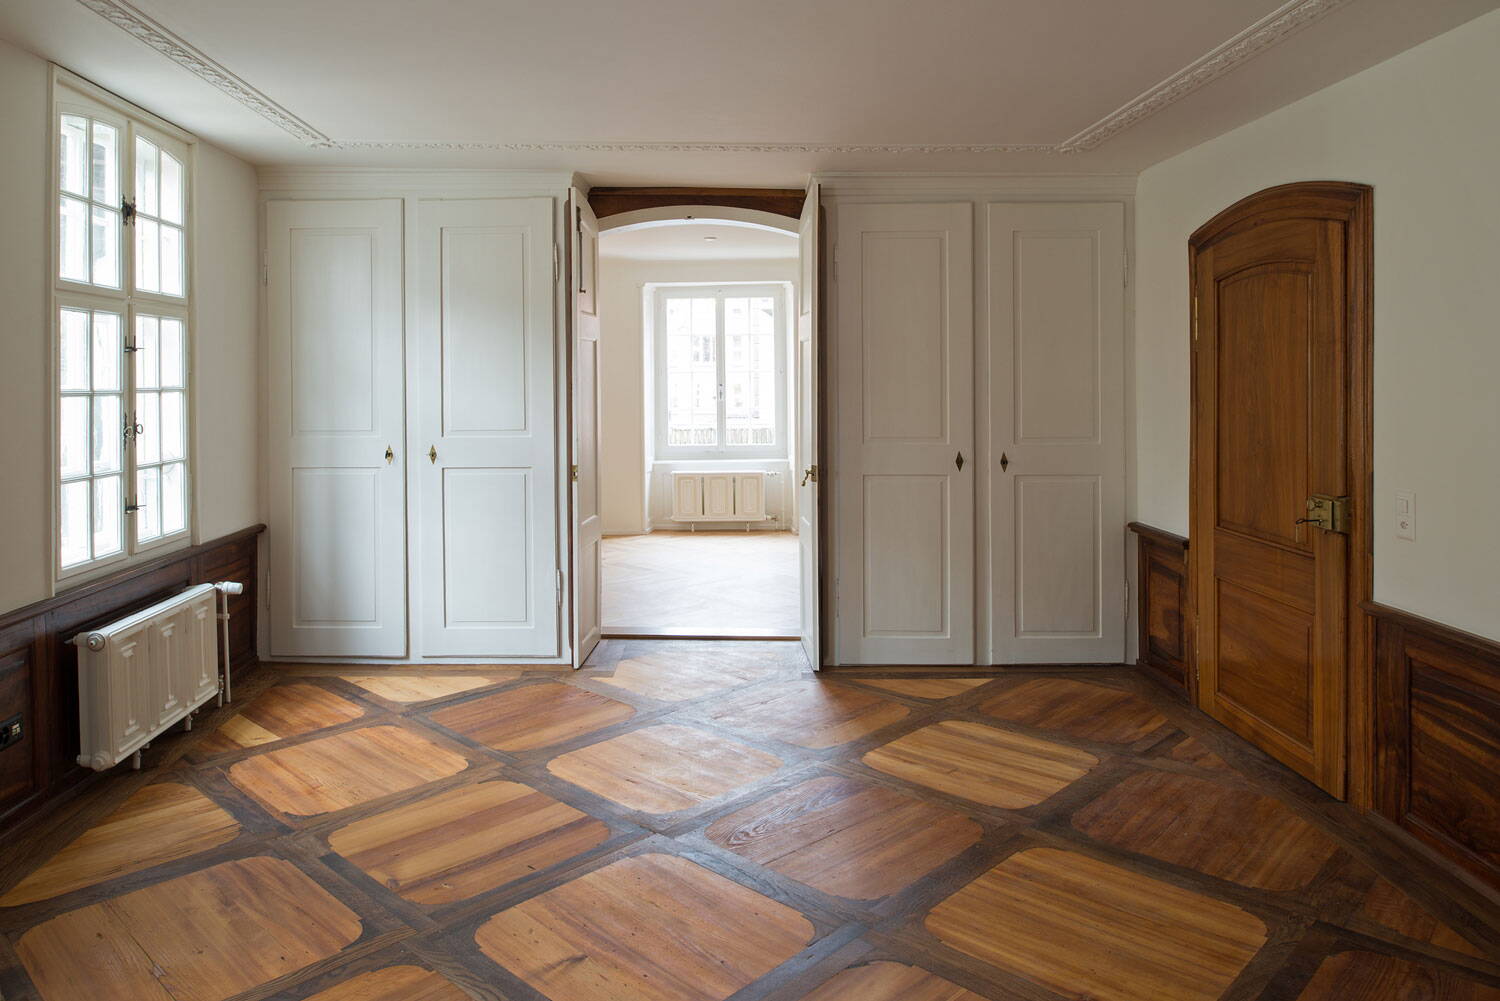 Haus zur Farb, Zürich Stadelhofen, Blick in Zimmer durch geöffnete Flügeltüre in weiteres Zimmer. Restauriertes Holzwerk.